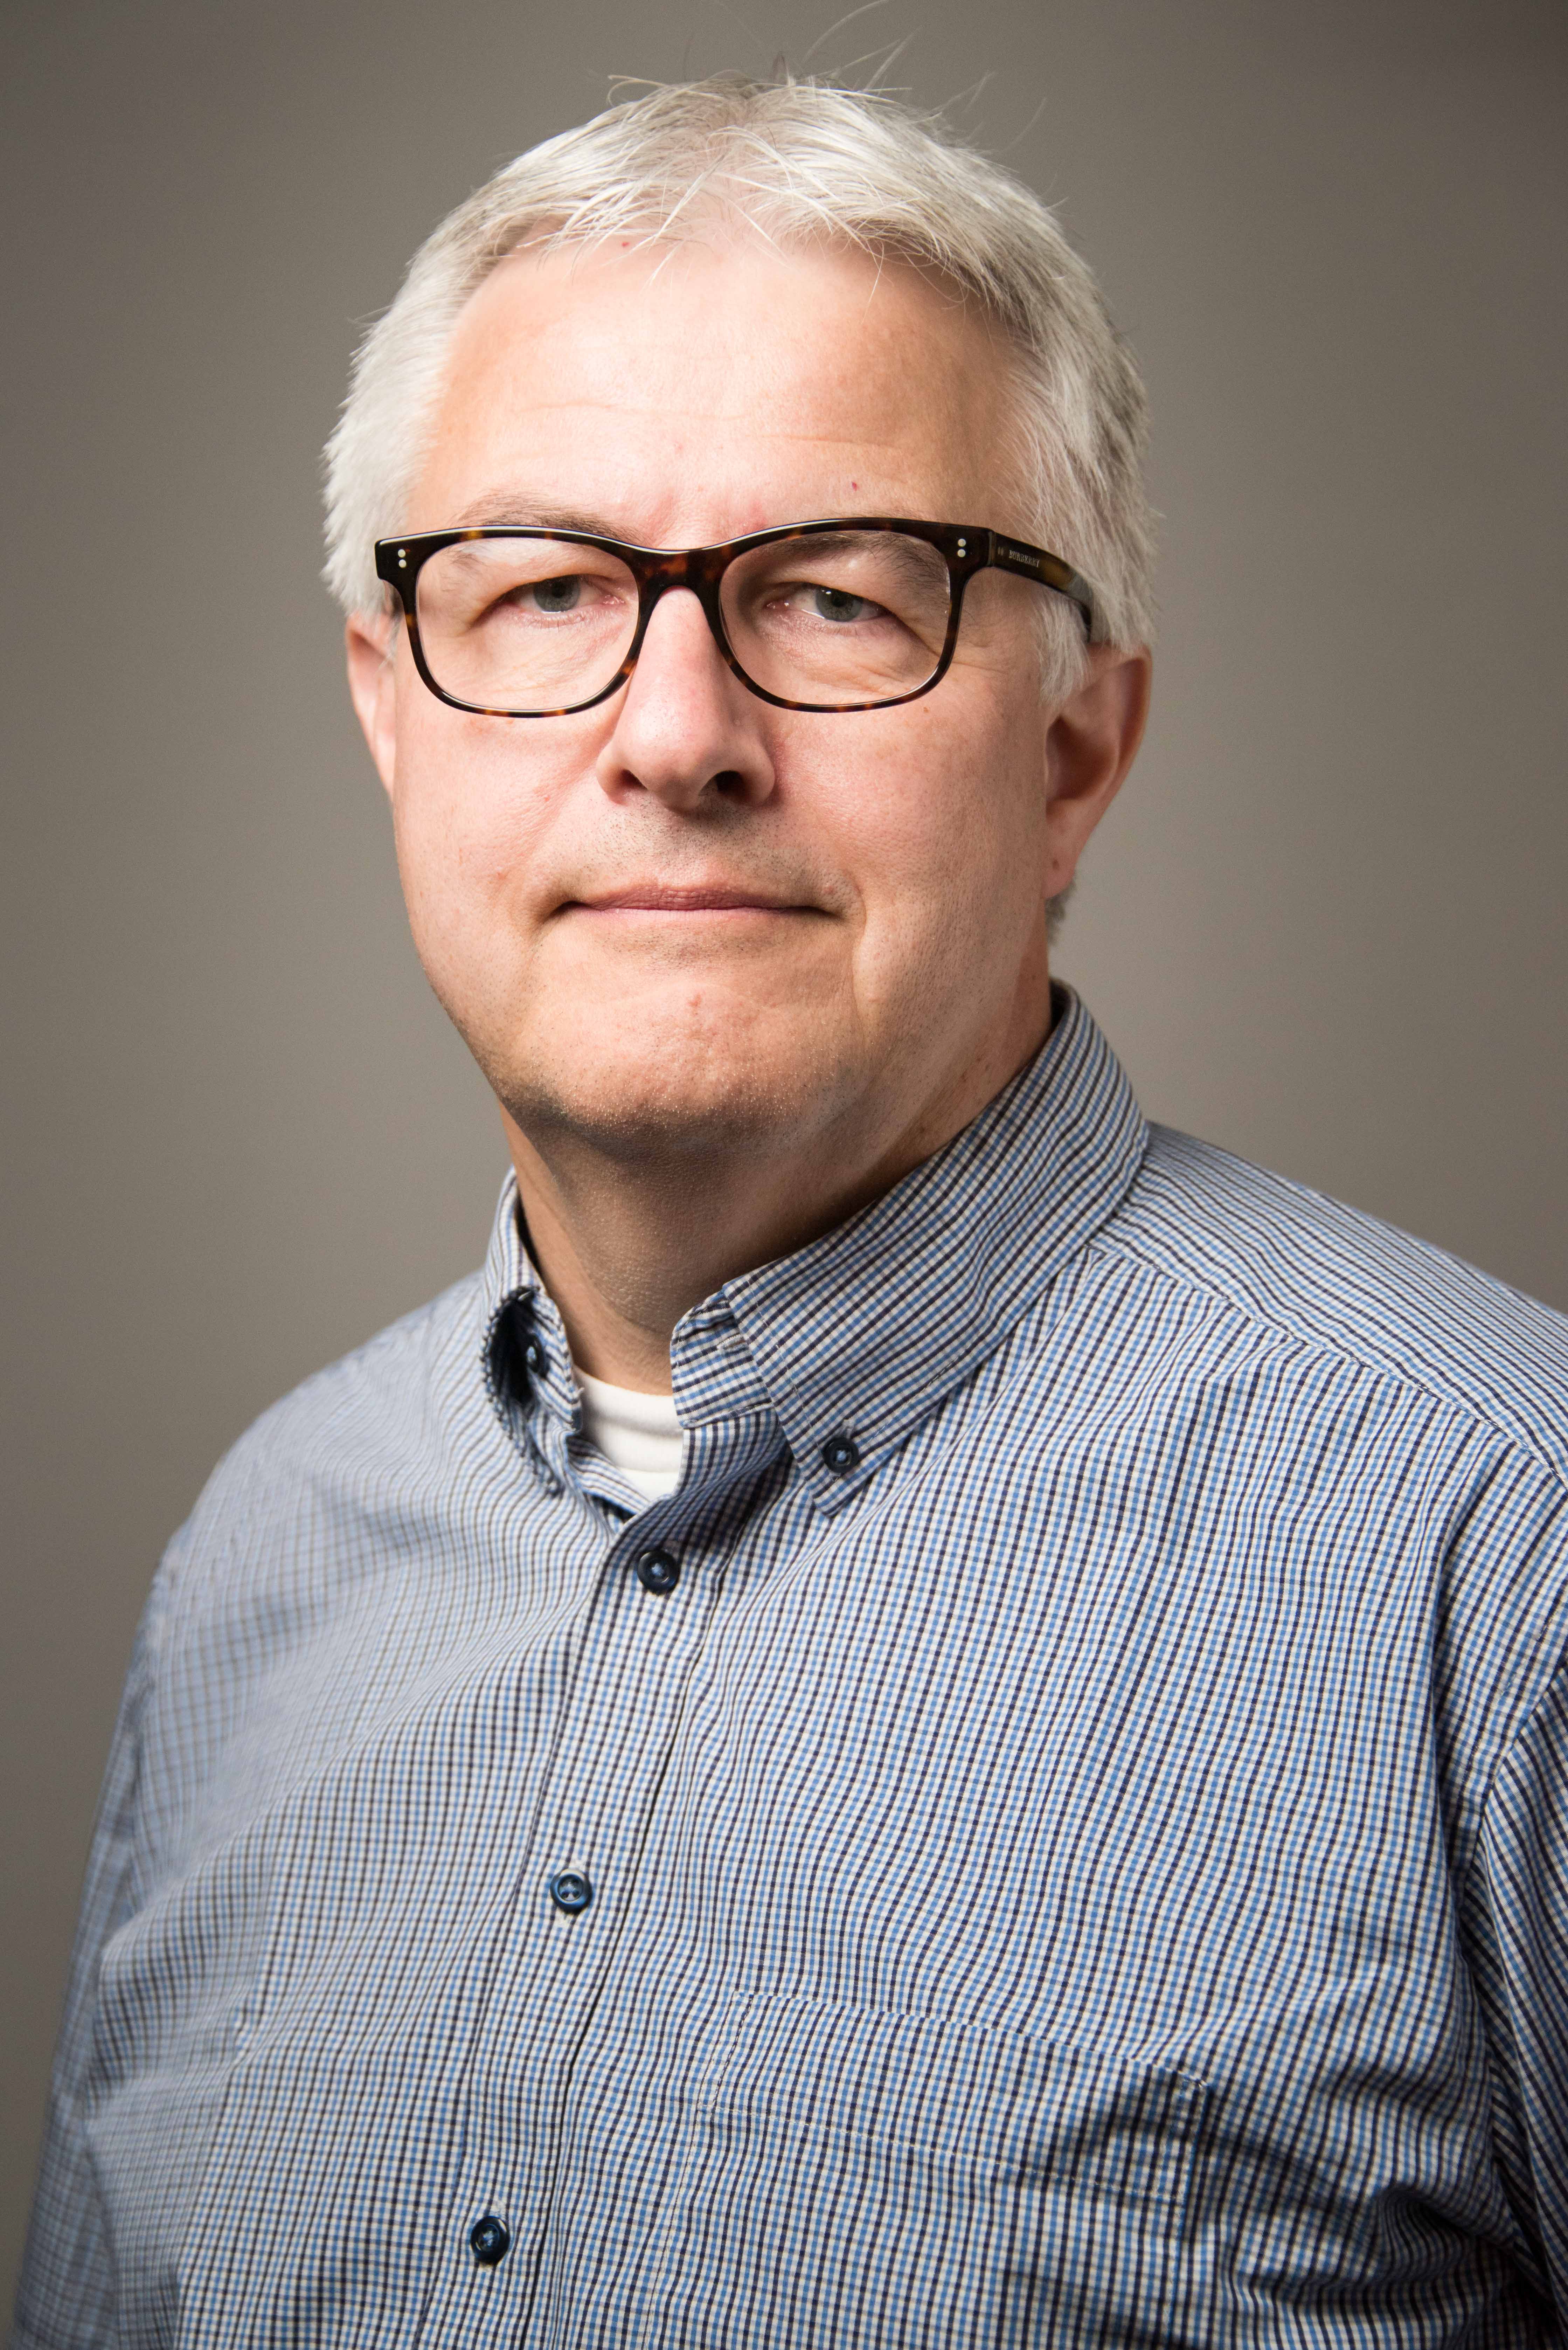 Bernd Meibohm, PhD, FCP, FAAPS